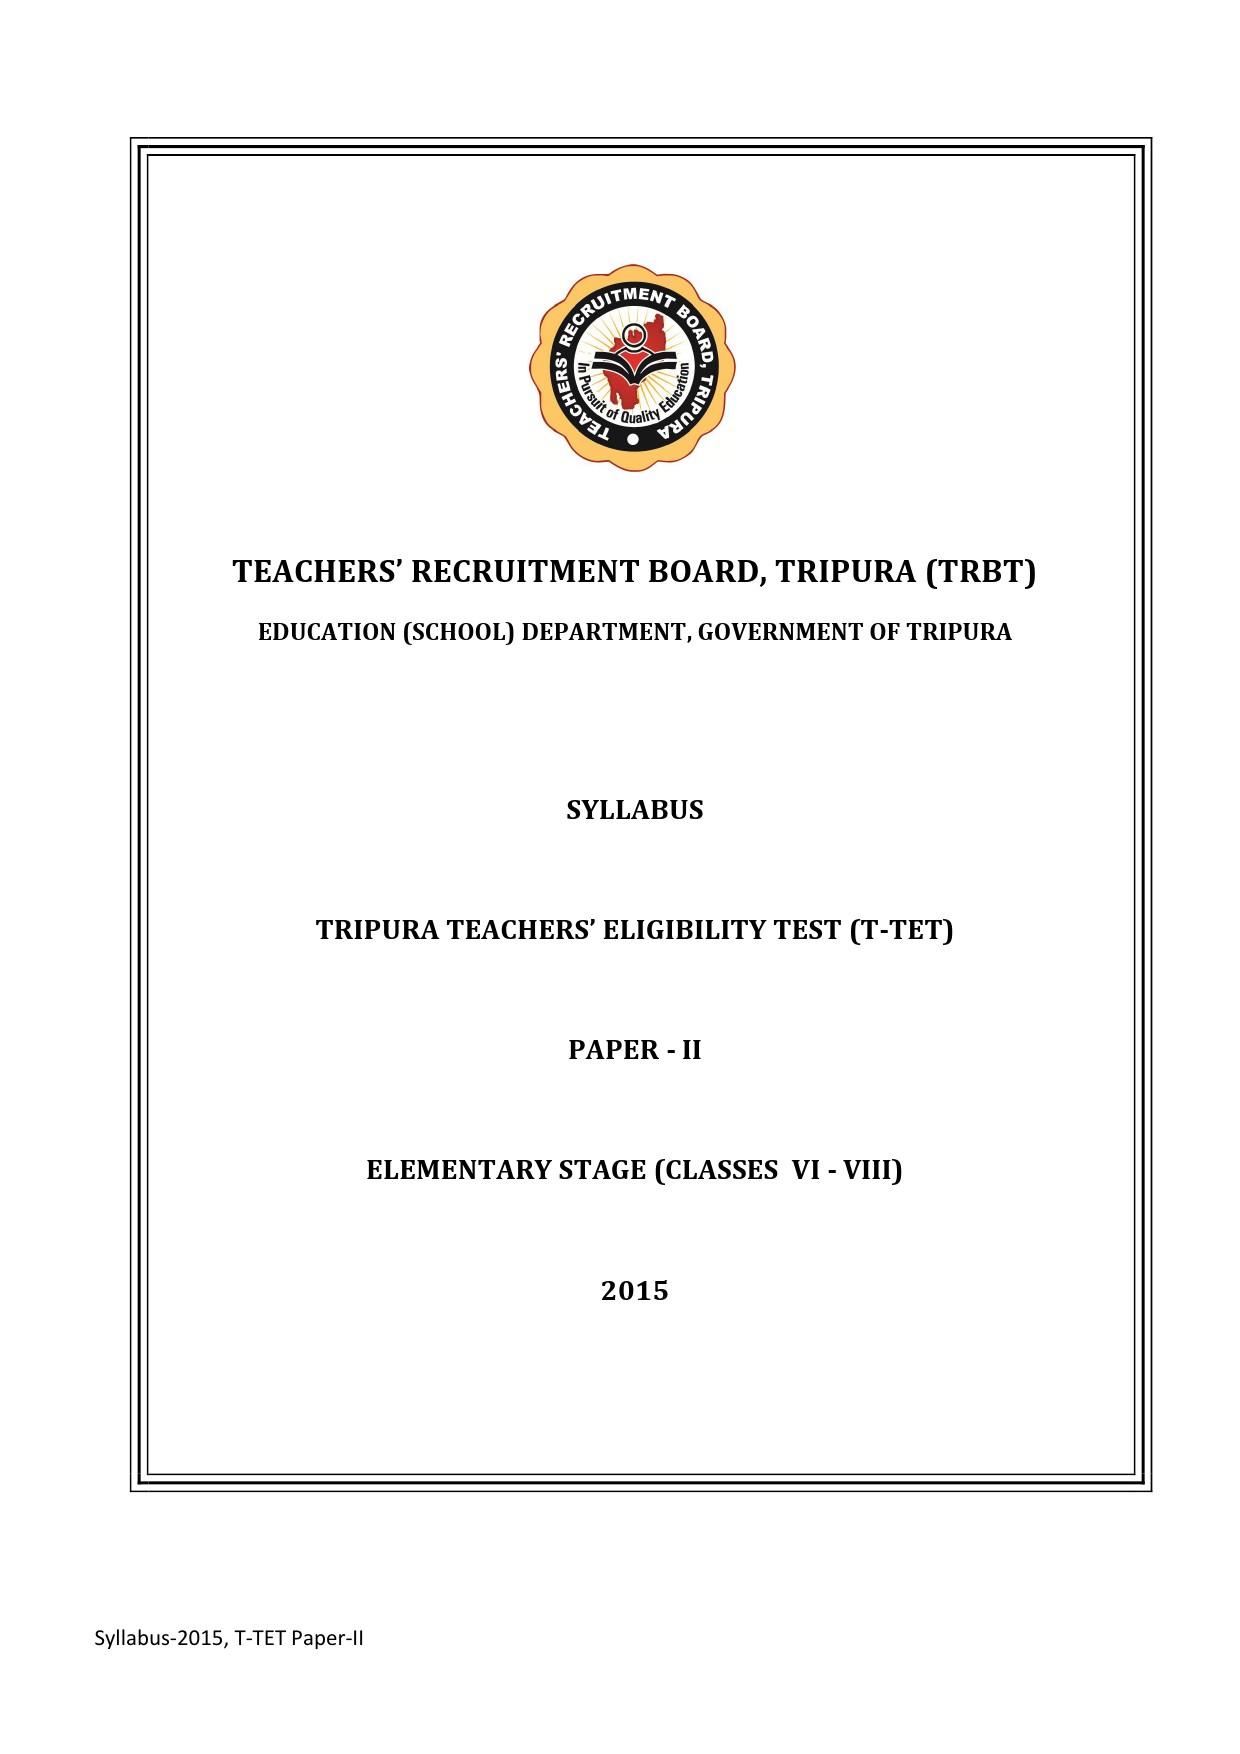 Syllabus of T-TET Paper-II 1